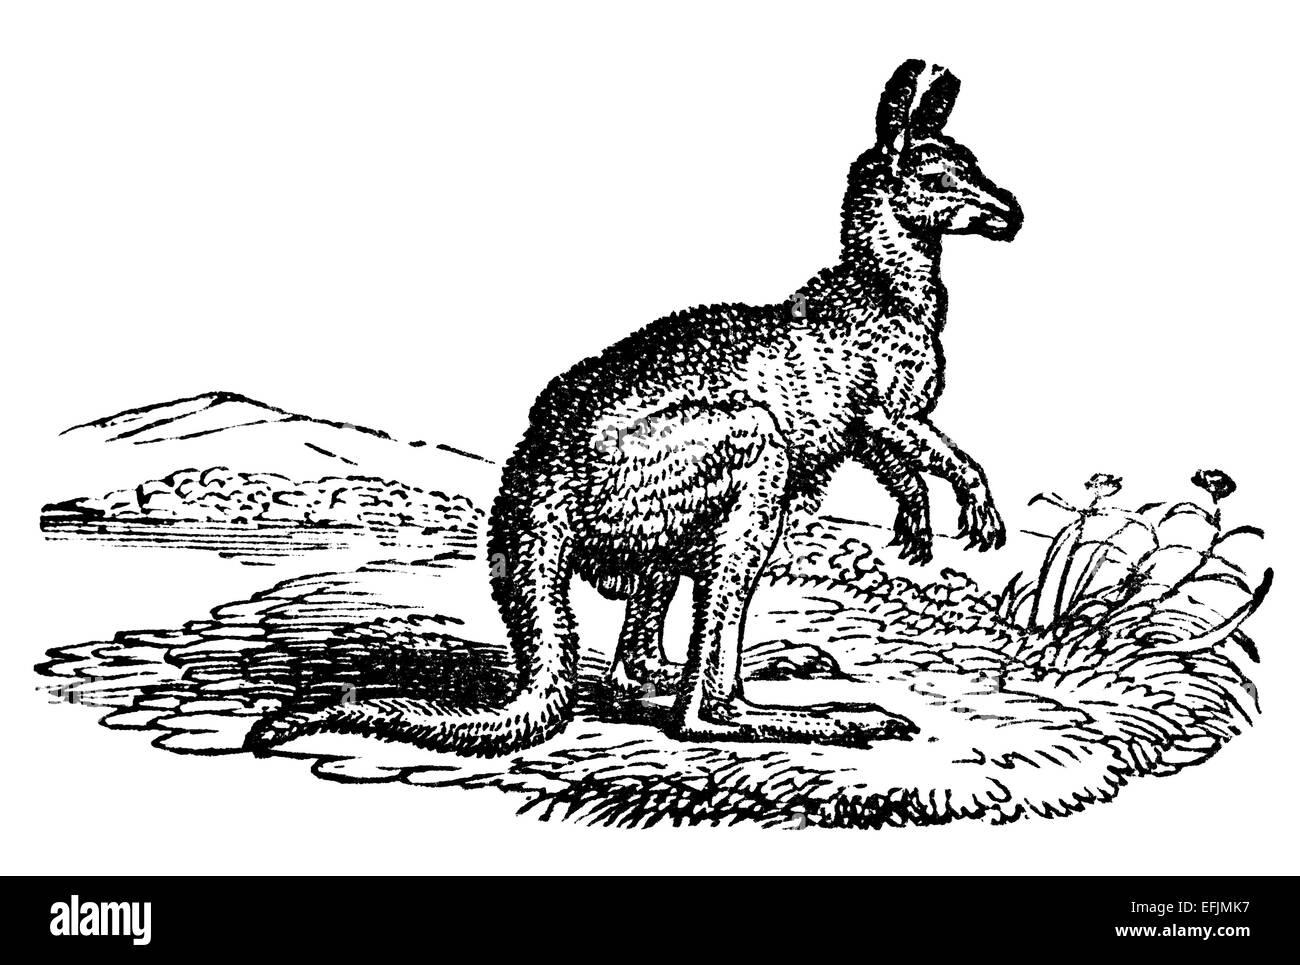 La gravure de l'époque victorienne d'un kangourou. Image restaurée numériquement à partir d'un milieu du xixe siècle l'encyclopédie. Banque D'Images